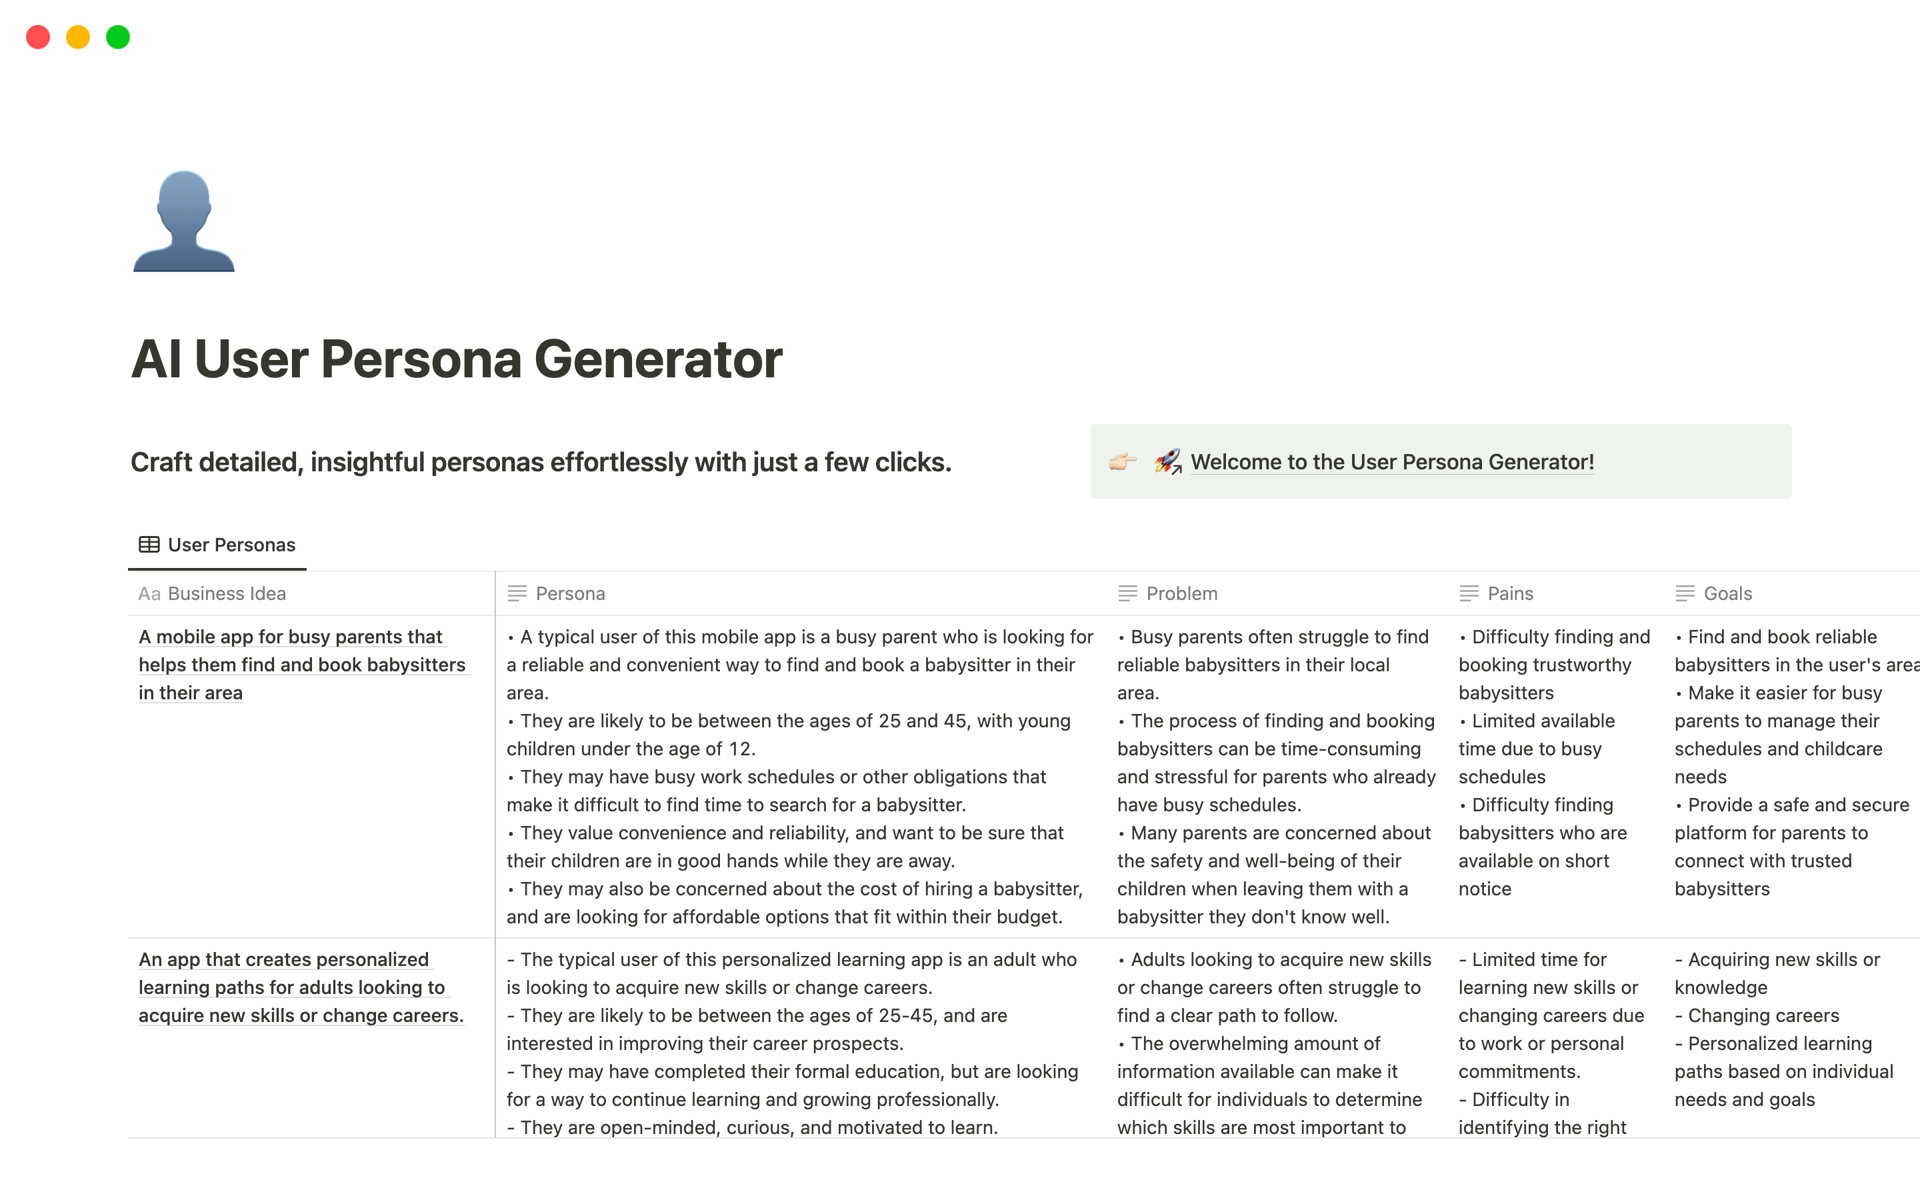 En förhandsgranskning av mallen för AI User Persona Generator